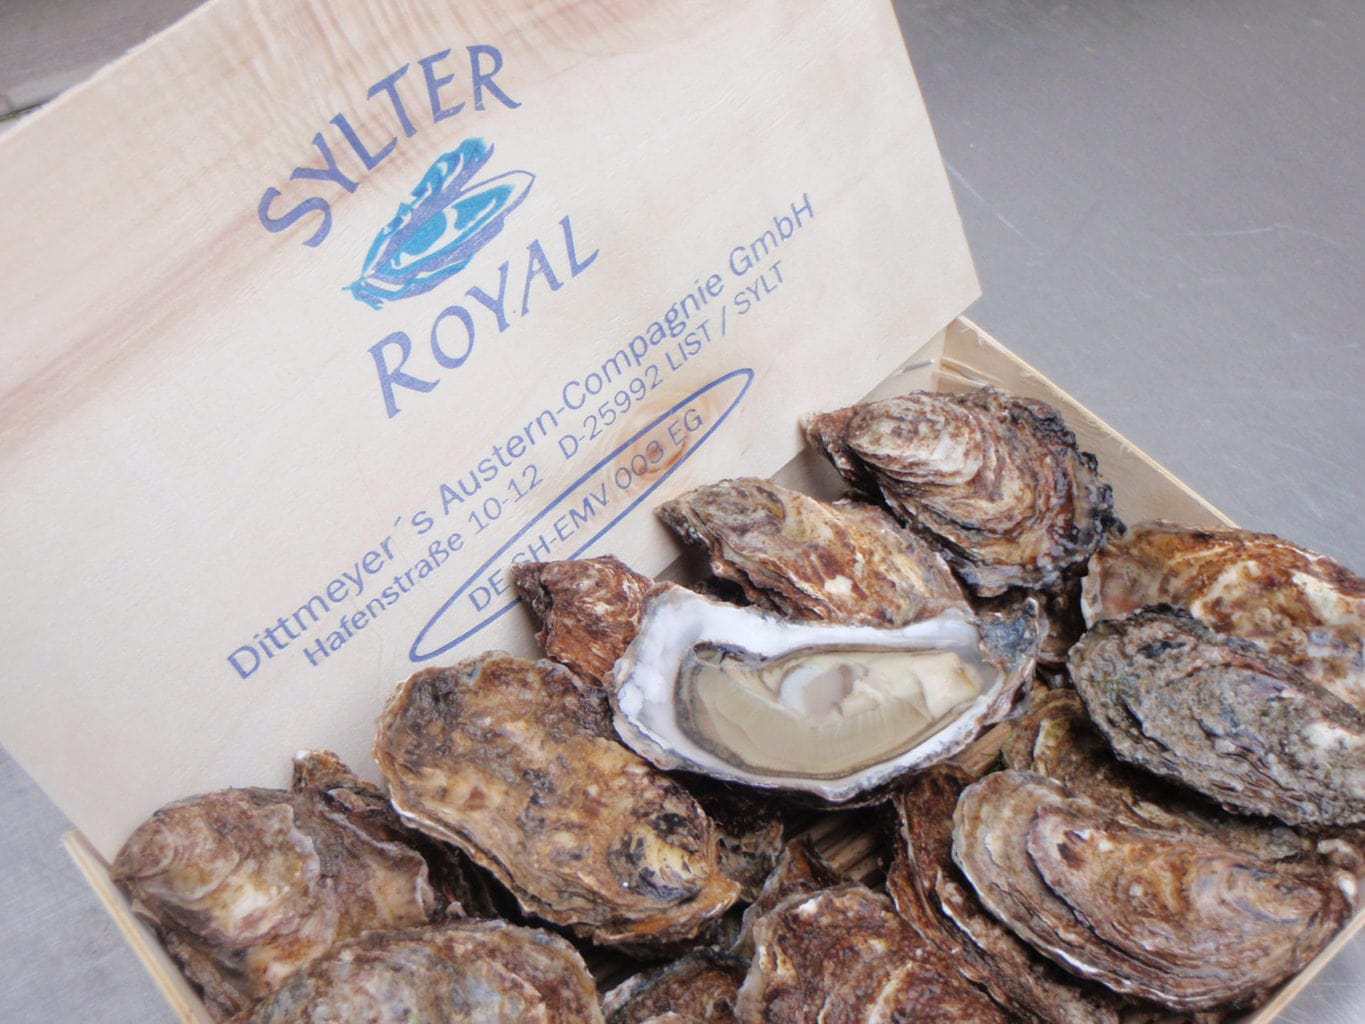 Duitse oesters komen uit de Noordzee en worden op het eiland Sylt geteeld